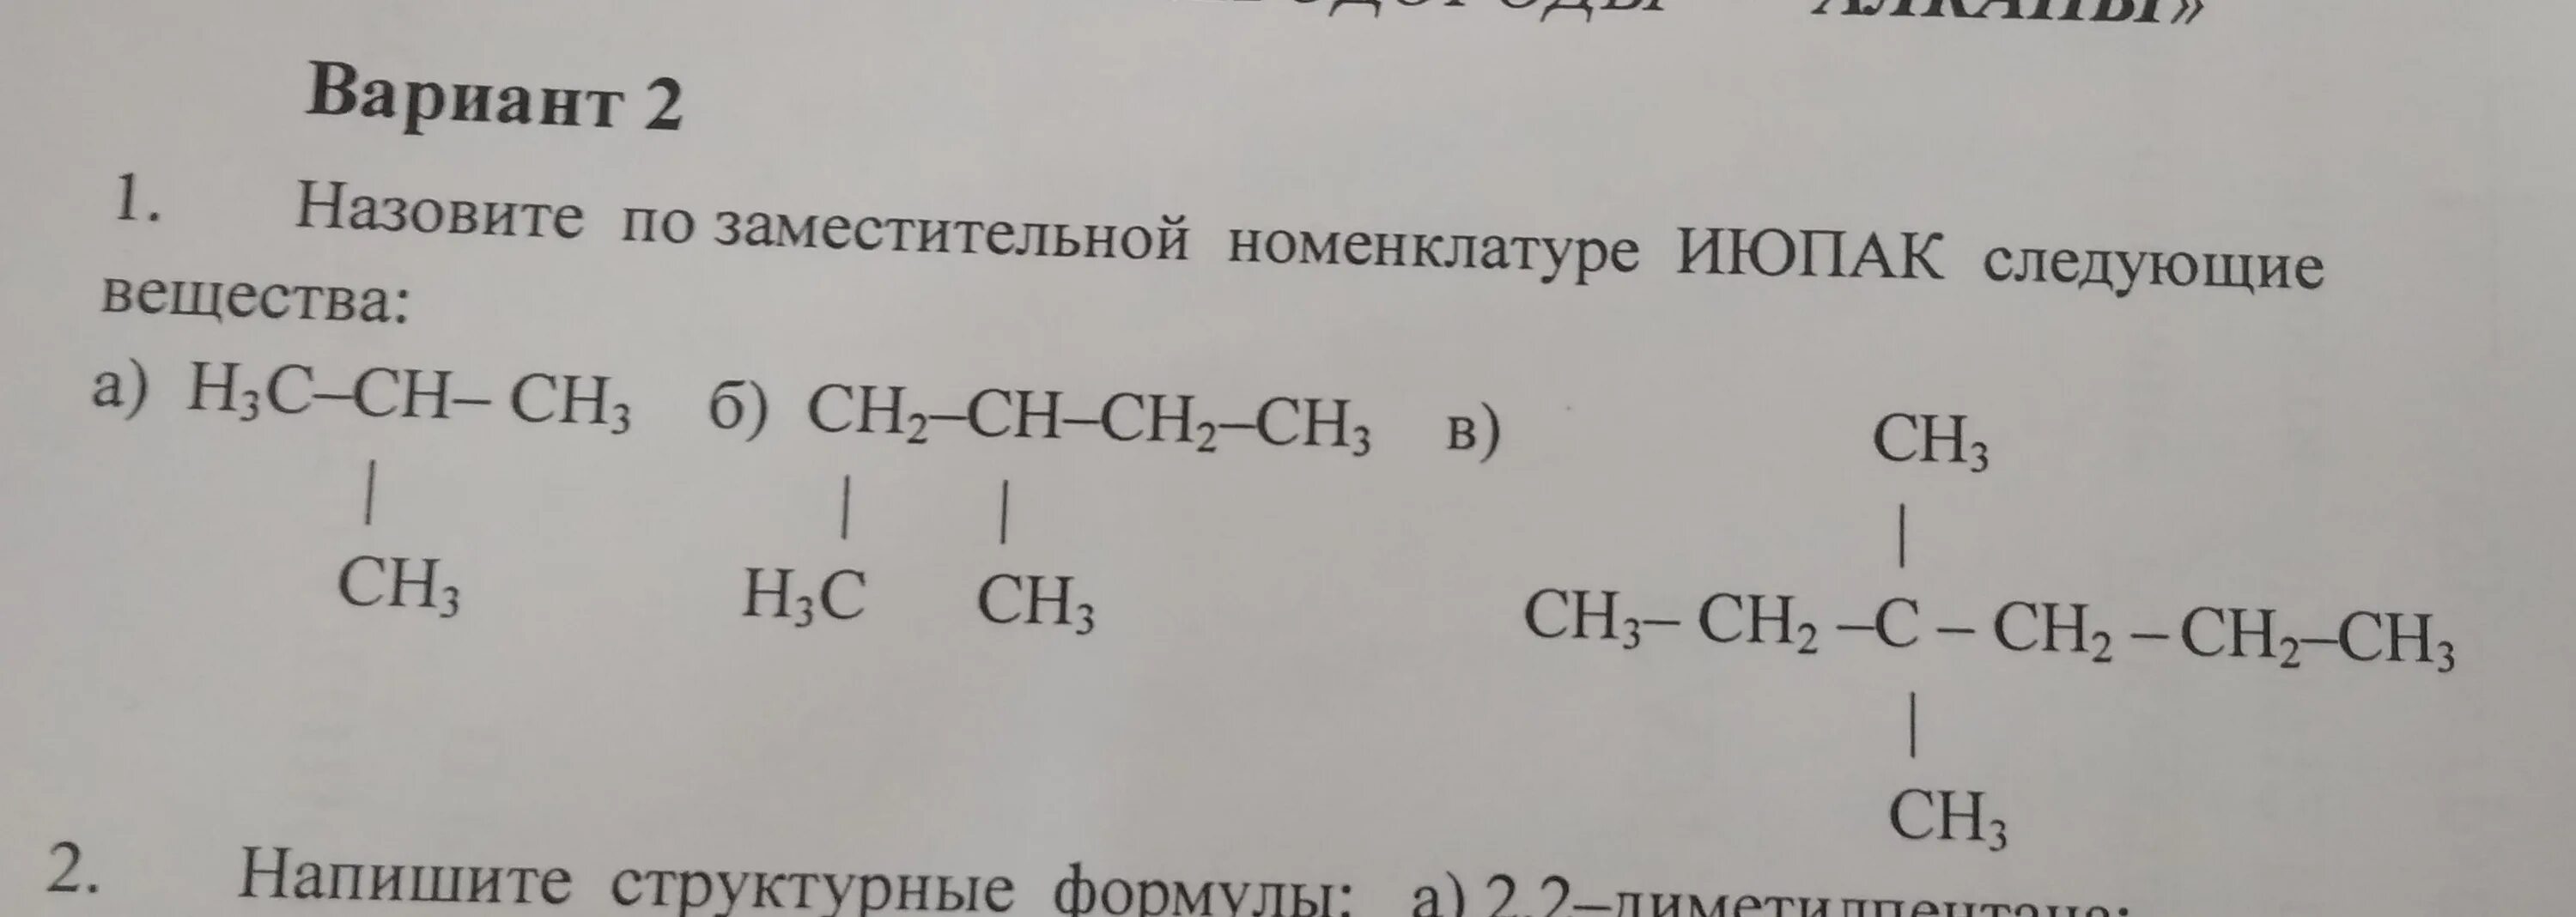 Назовите по номенклатуре IUPAC следующие вещества h3c-ch2-Ch-Ch-ch2-ch2ch3. Назовите соединения по заместительной номенклатуре. Назовите по номенклатуре ИЮПАК следующие вещества h3c-Ch-ch2-ch2-ch2-ch2-ch3. Ch c-ch2-ch3 по номенклатуре ИЮПАК. Назовите следующие соединения а б